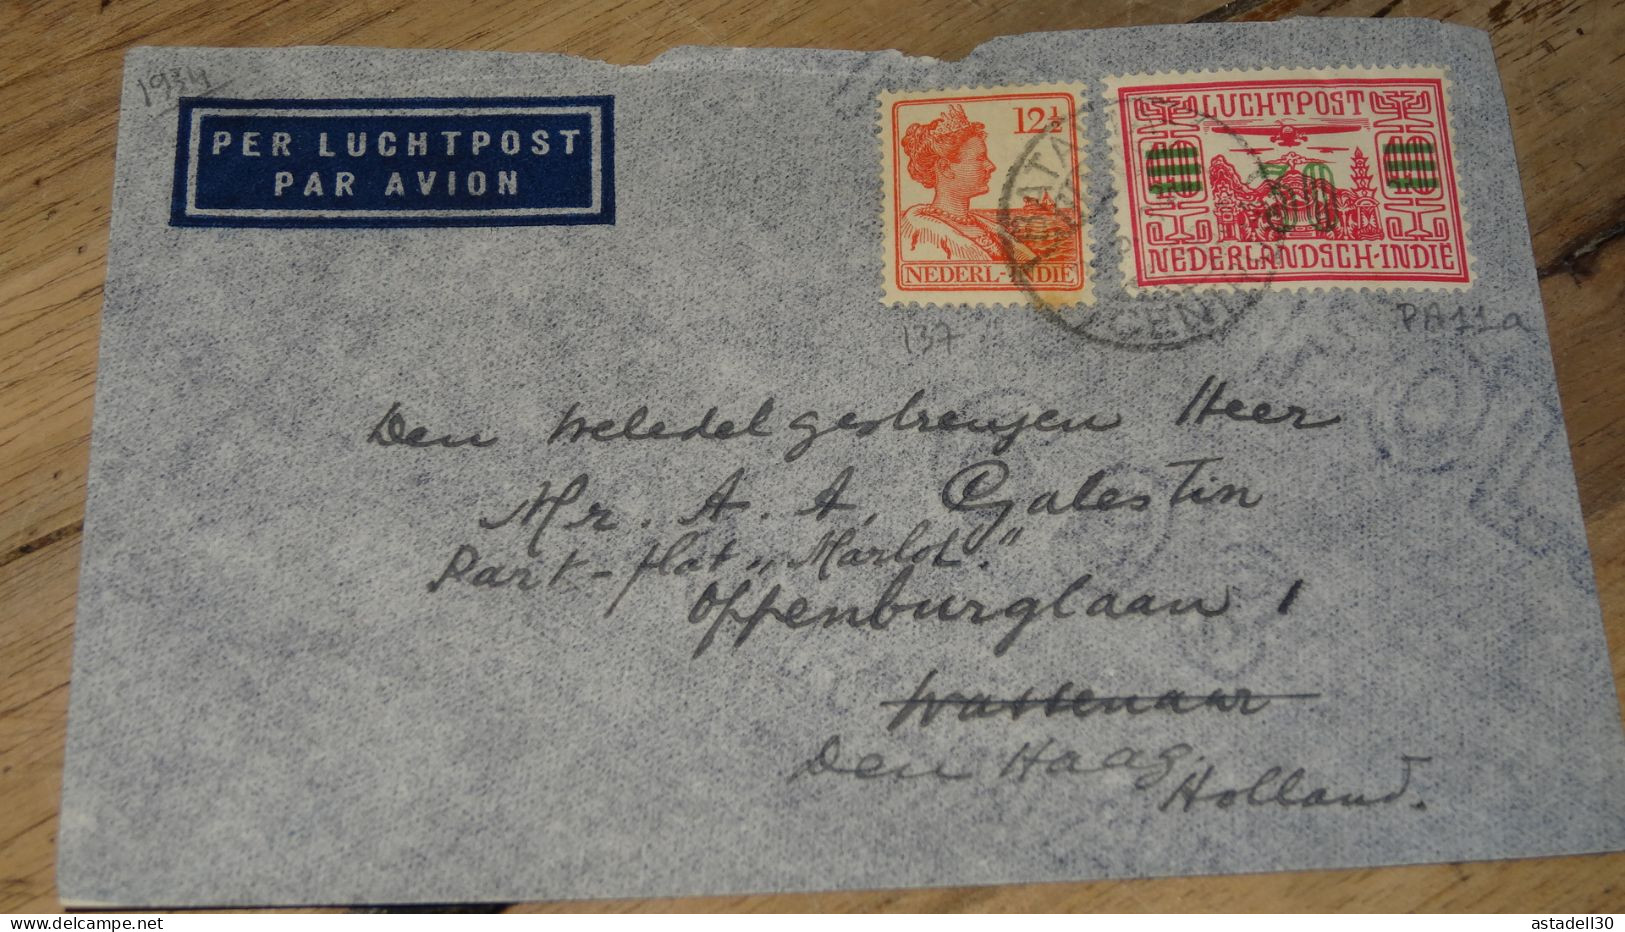 NEDERLANDISCH INDIE, Cover Luchtpost To Holland - 1934 ......... ..... 240424 ....... CL5-6 - Indes Néerlandaises